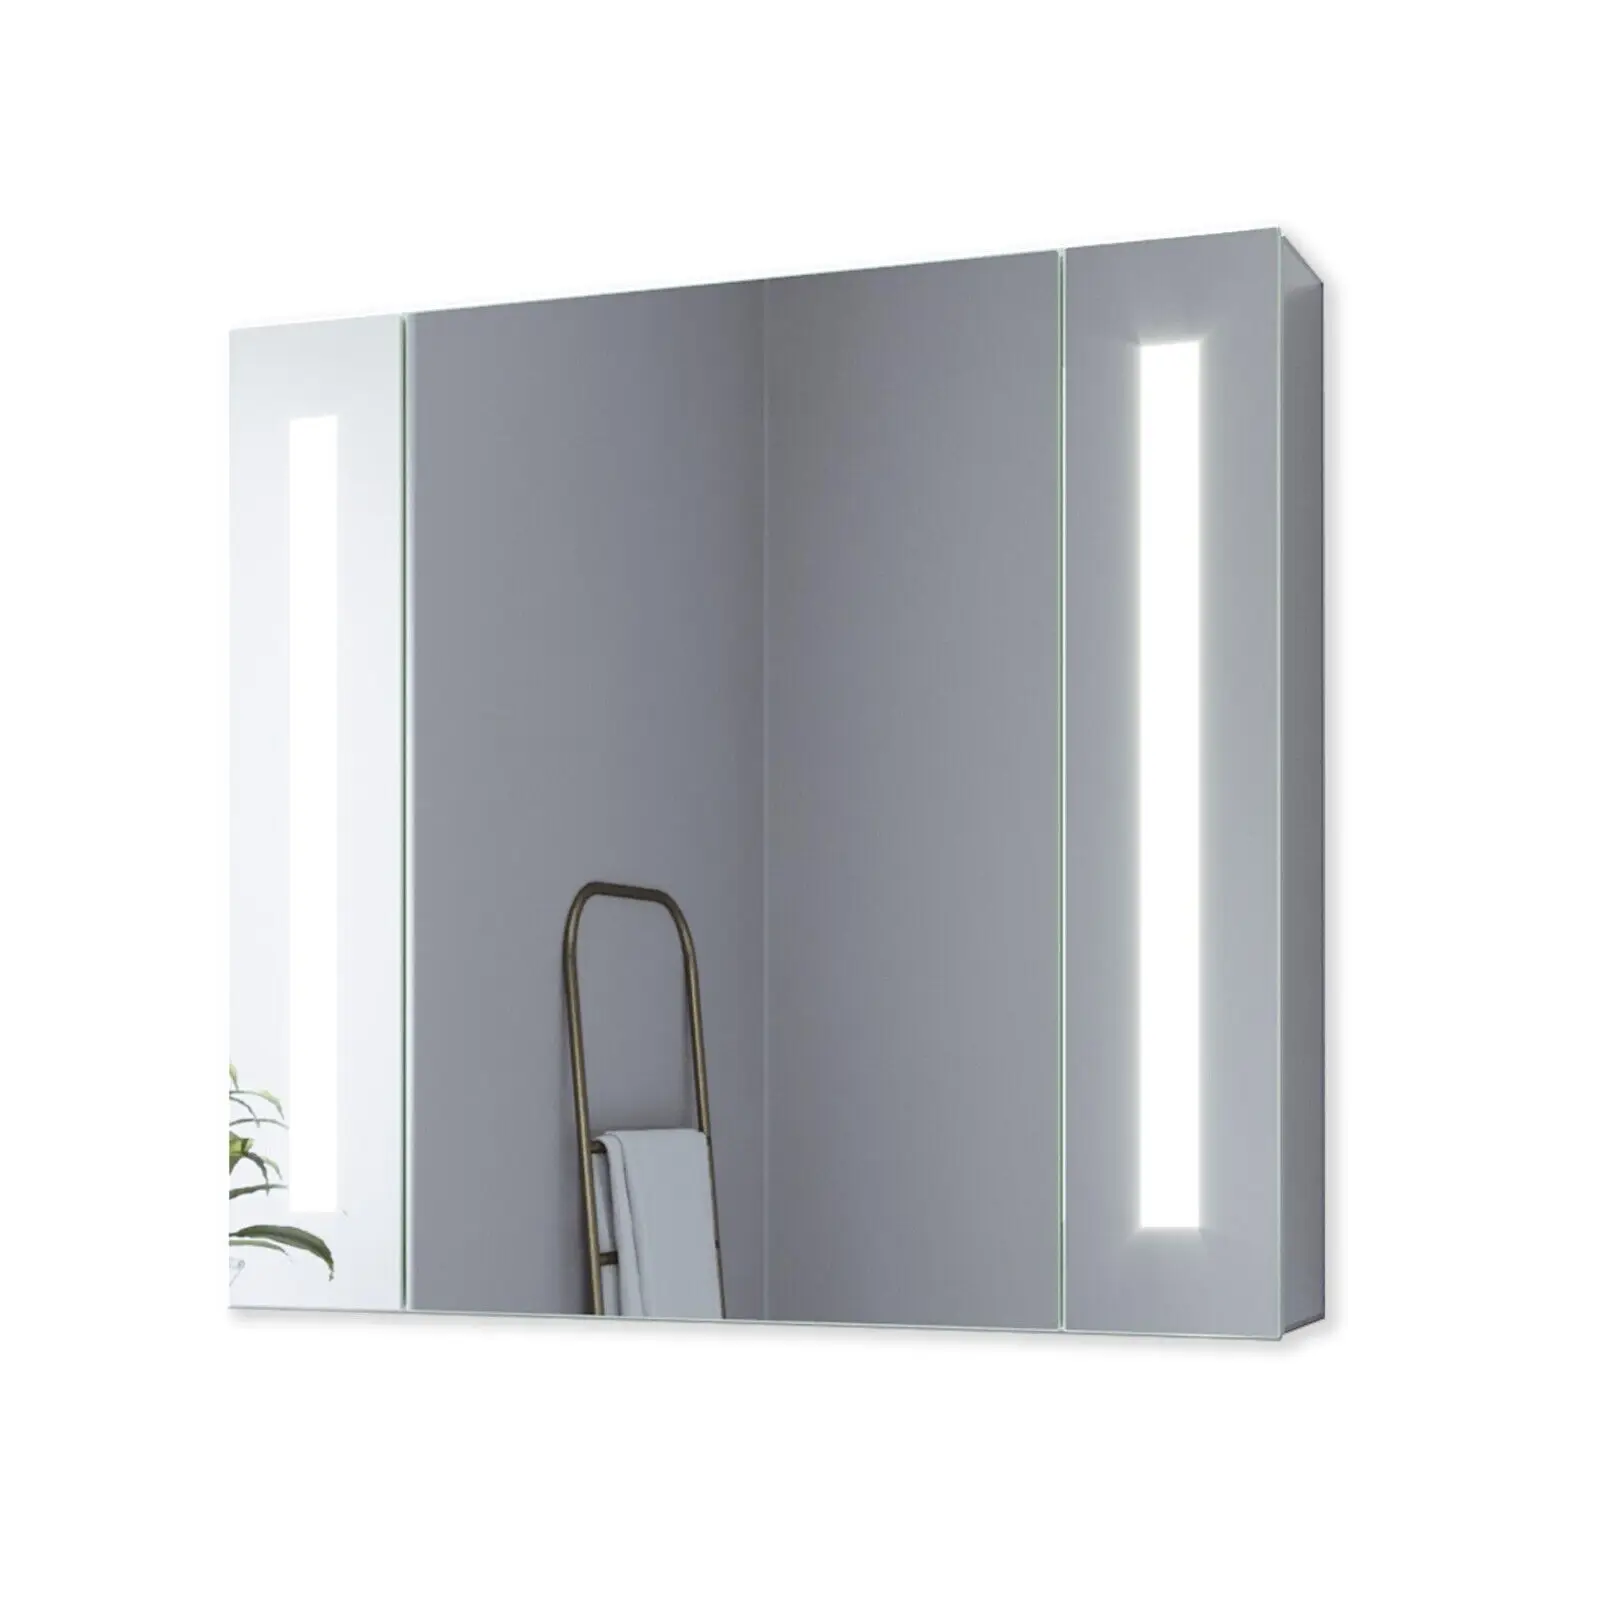 LED Badezimmer Spiegelschrank f眉r